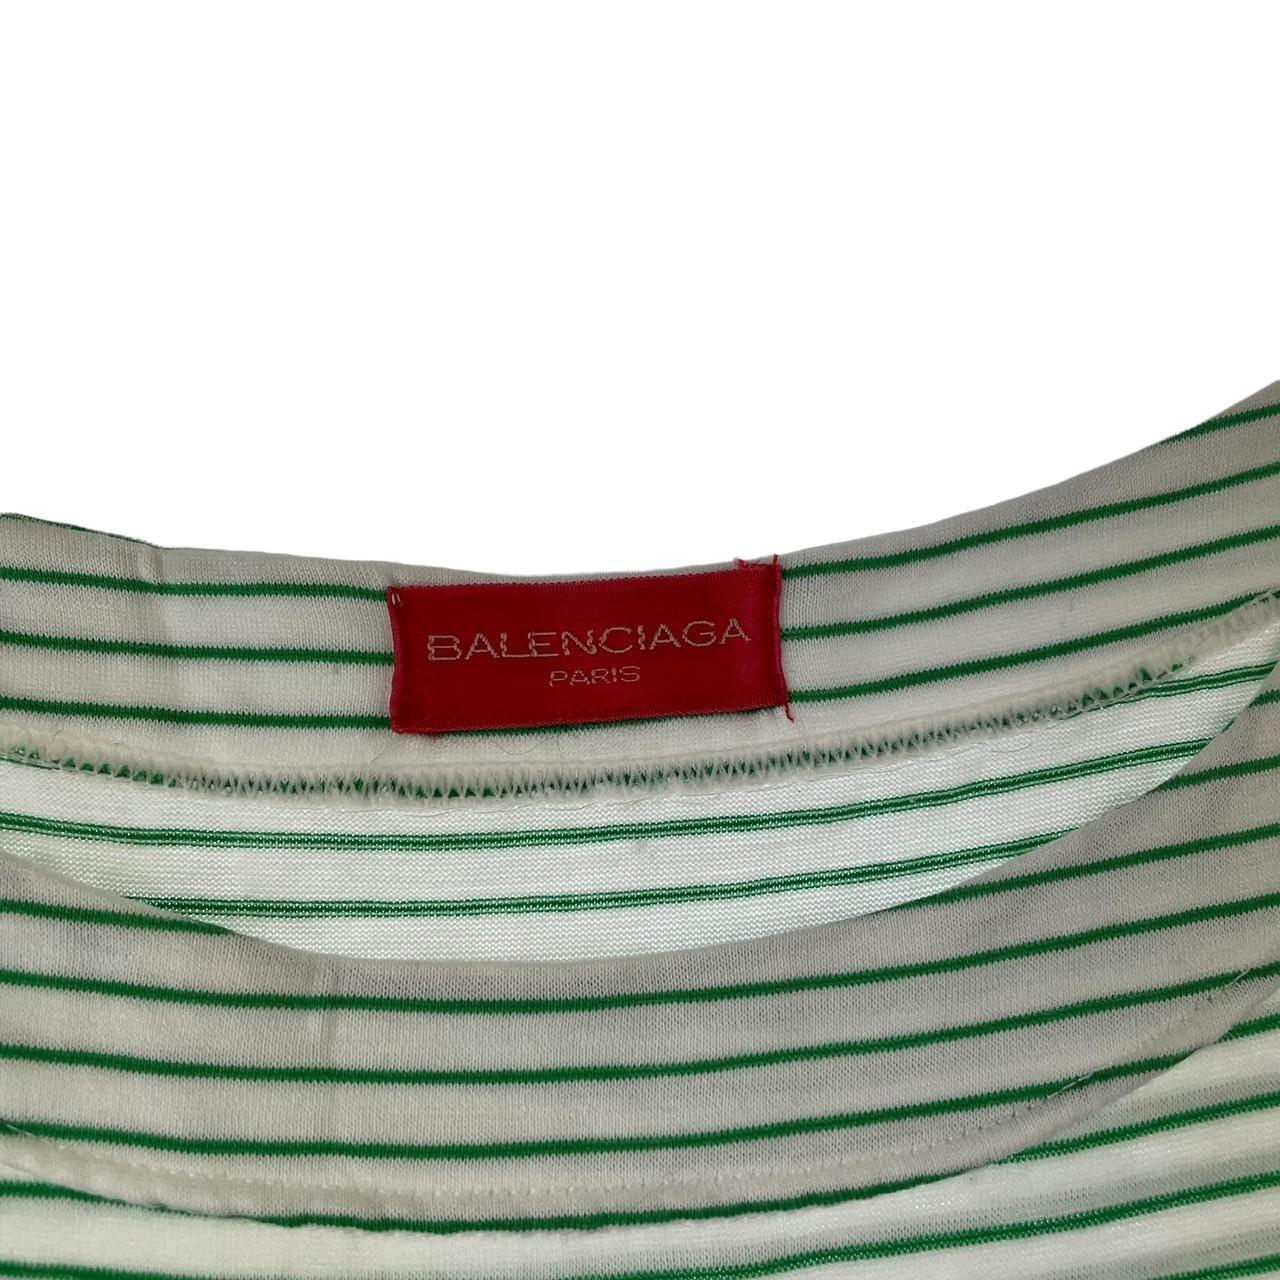 Vintage Balenciaga striped t shirt woman’s size S - Known Source